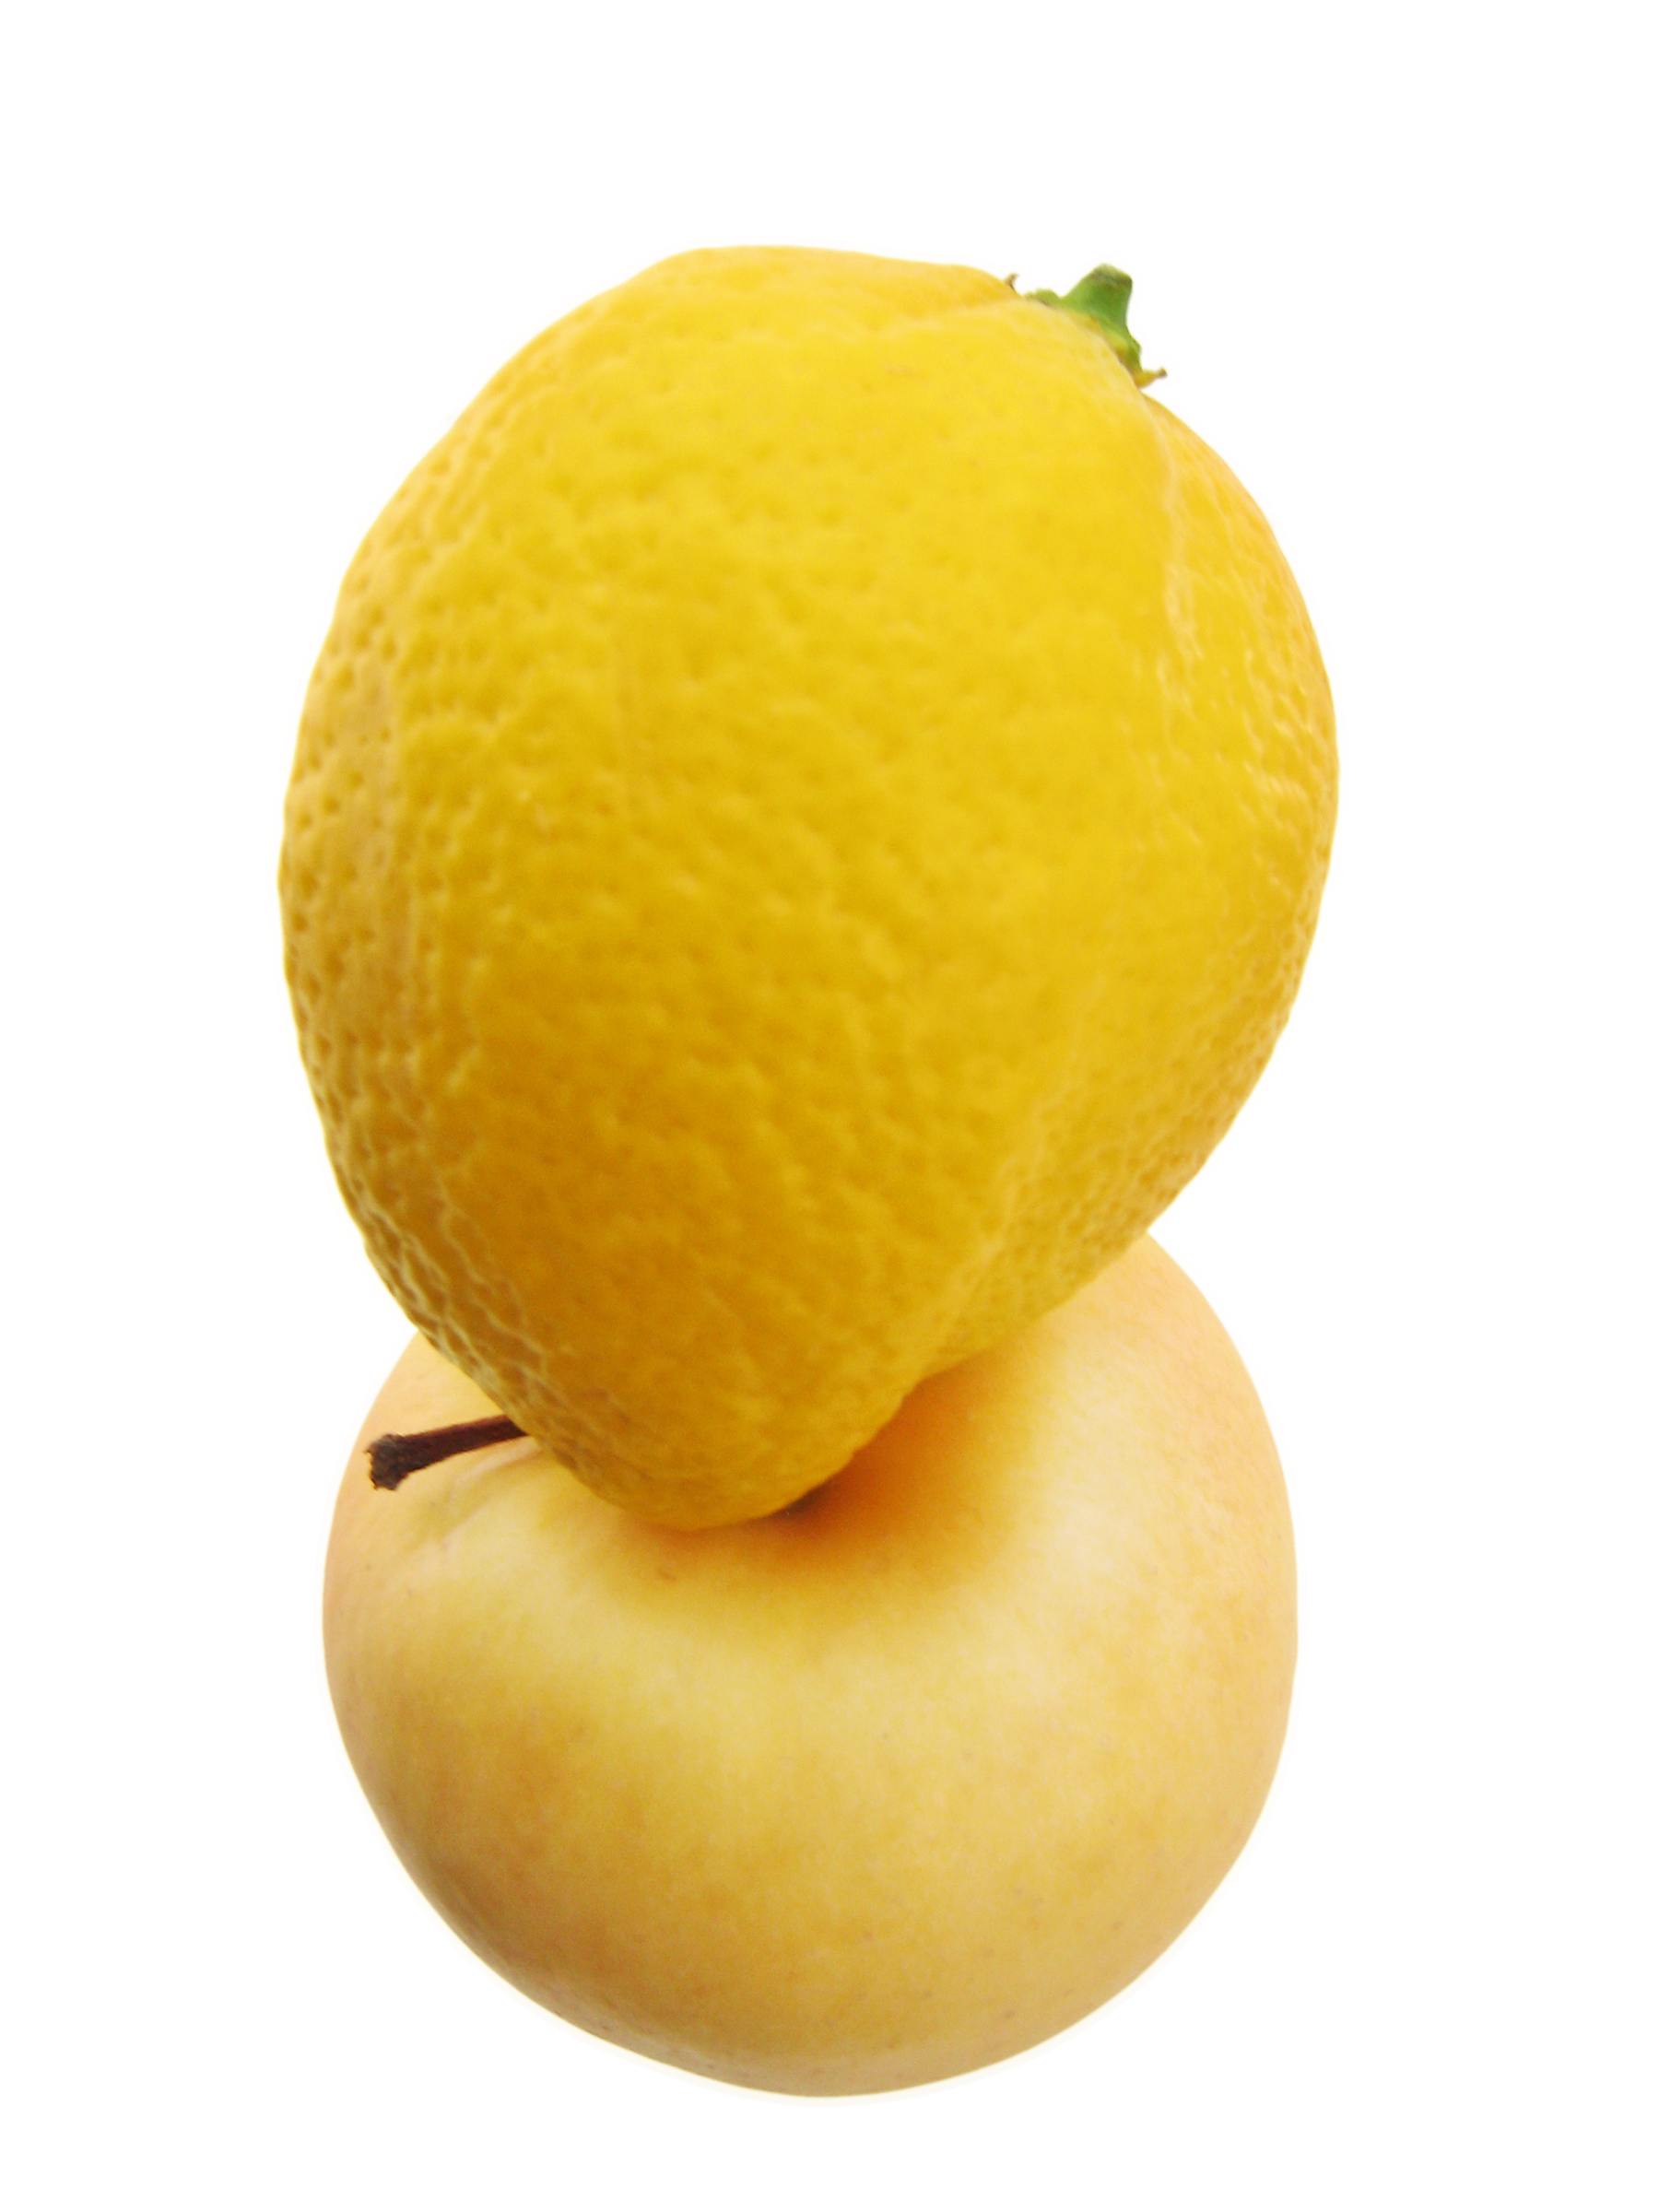 Lemon on apple, Apple, Juicy, Vibrant, Taste, HQ Photo